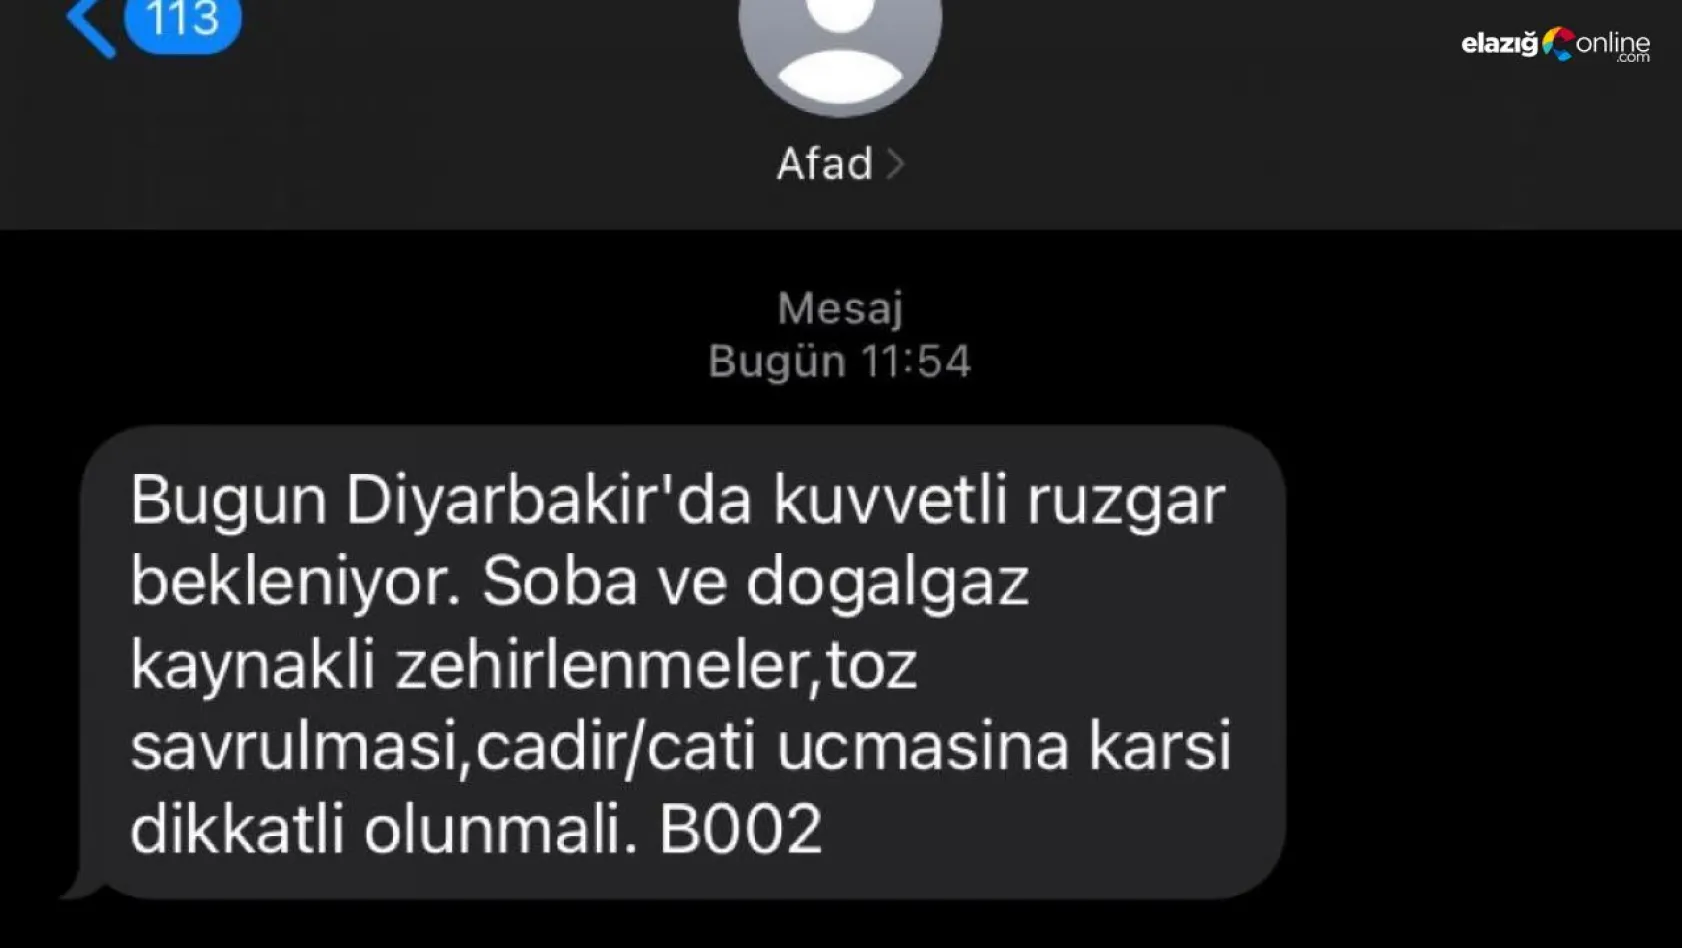 AFAD'dan Diyarbakır için kuvvetli rüzgar uyarısı